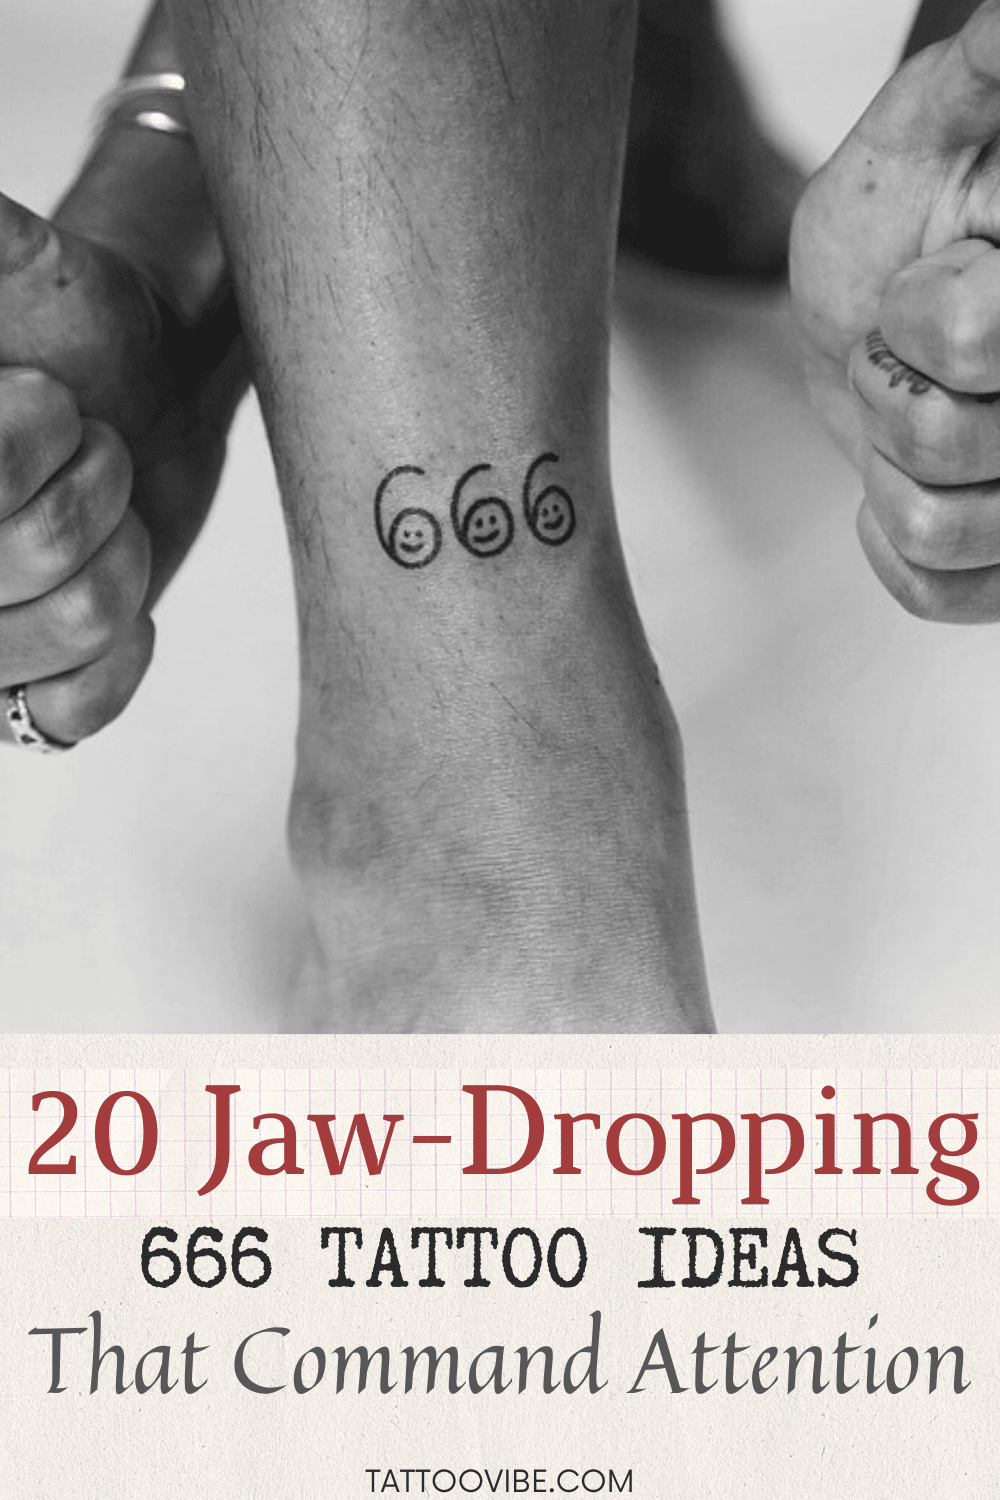 20 idee di tatuaggio 666 che lasciano a bocca aperta e attirano l'attenzione